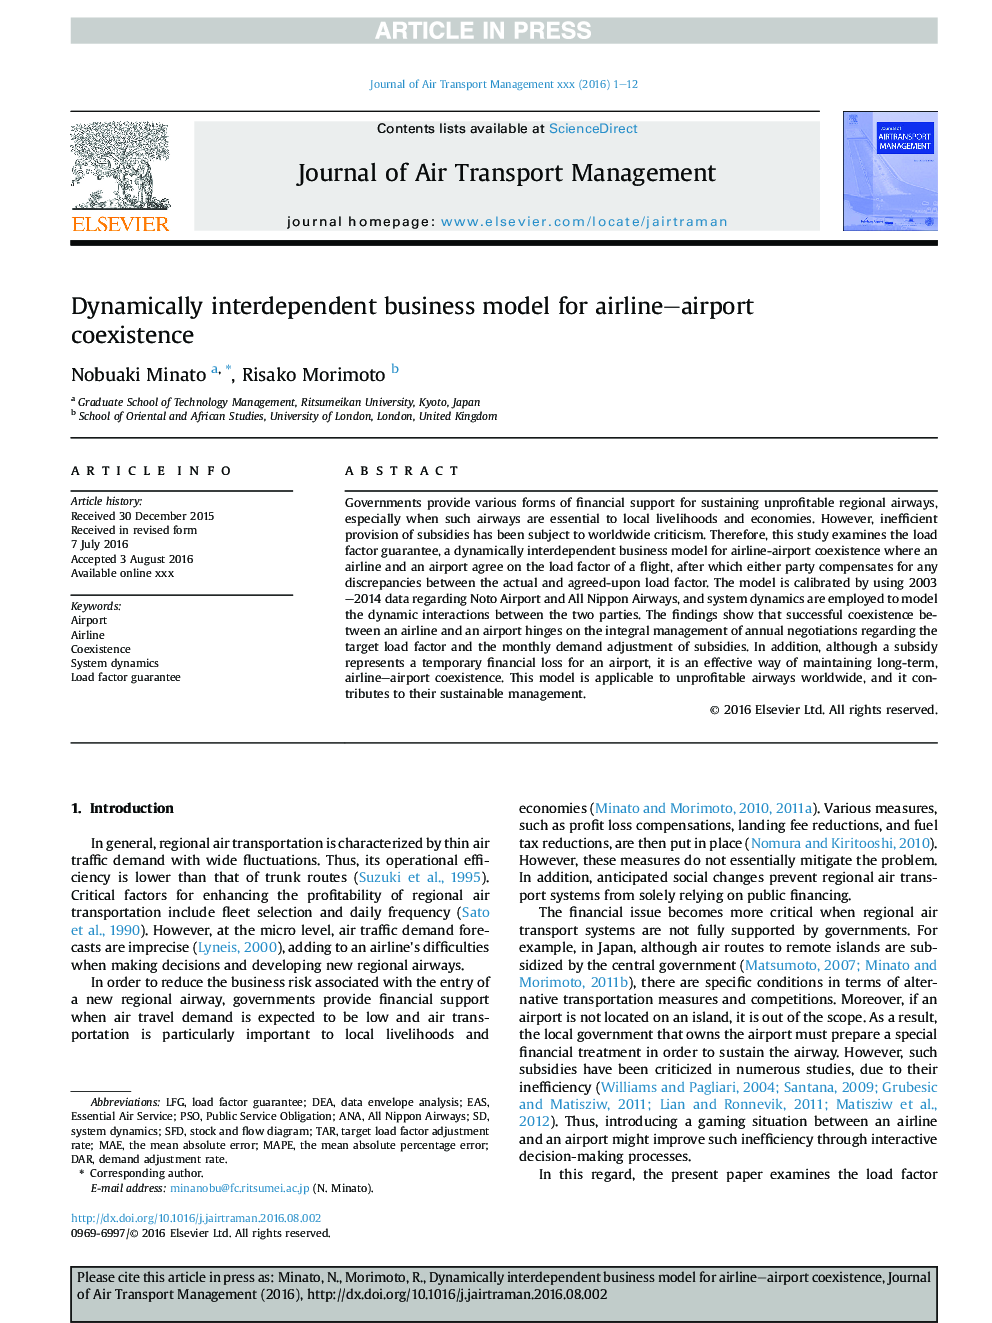 مدل کسب و کار به طور پویا وابسته به همکاری برای همزیستی فرودگاه و فرودگاه 